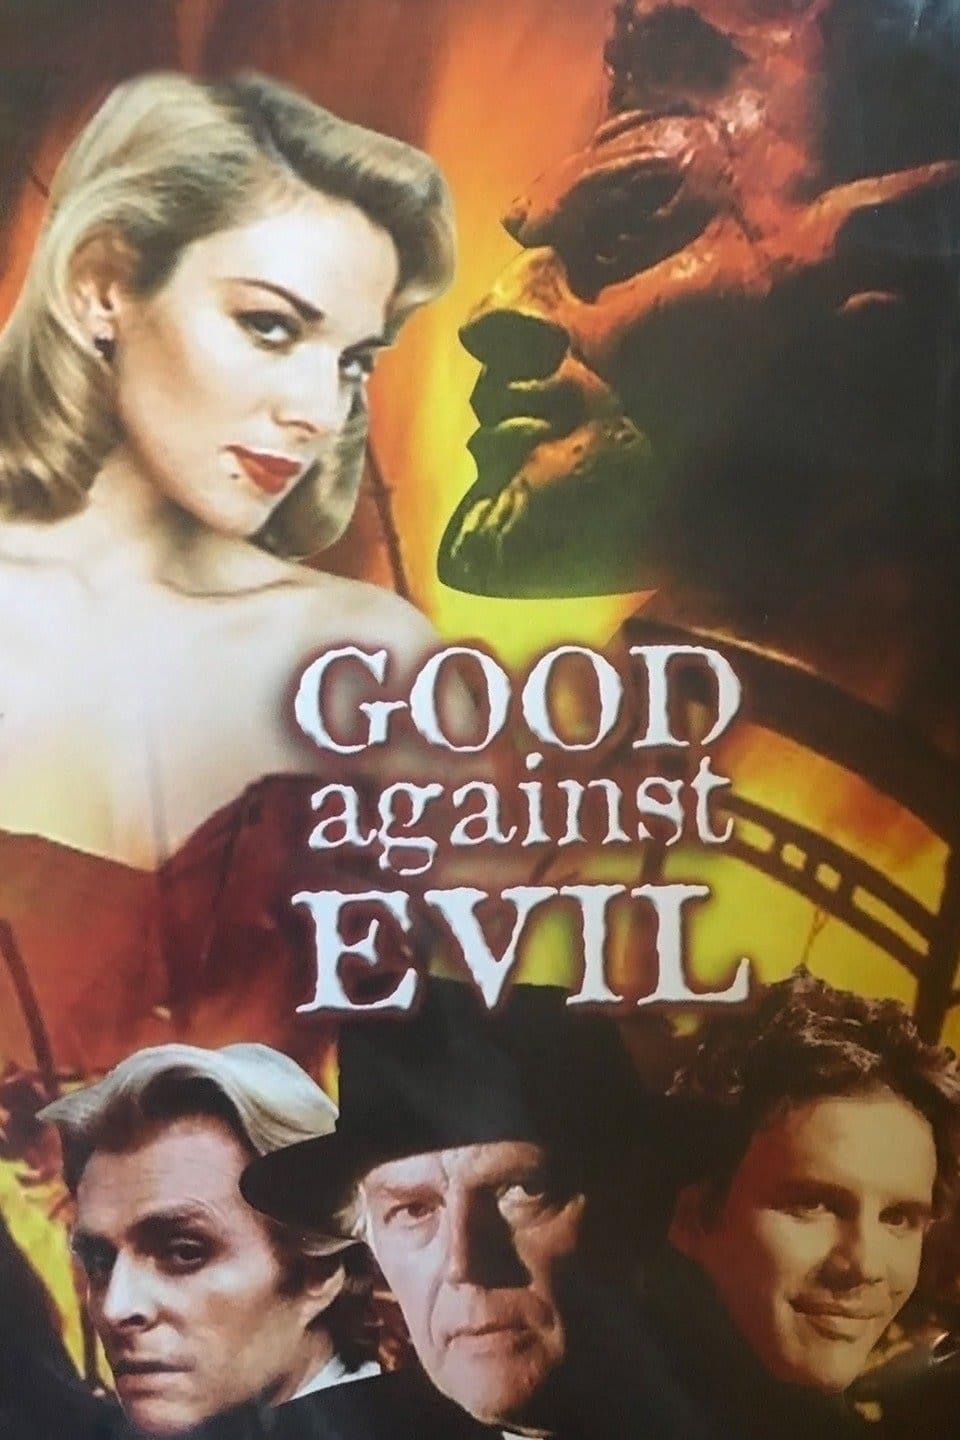 Good Against Evil poster